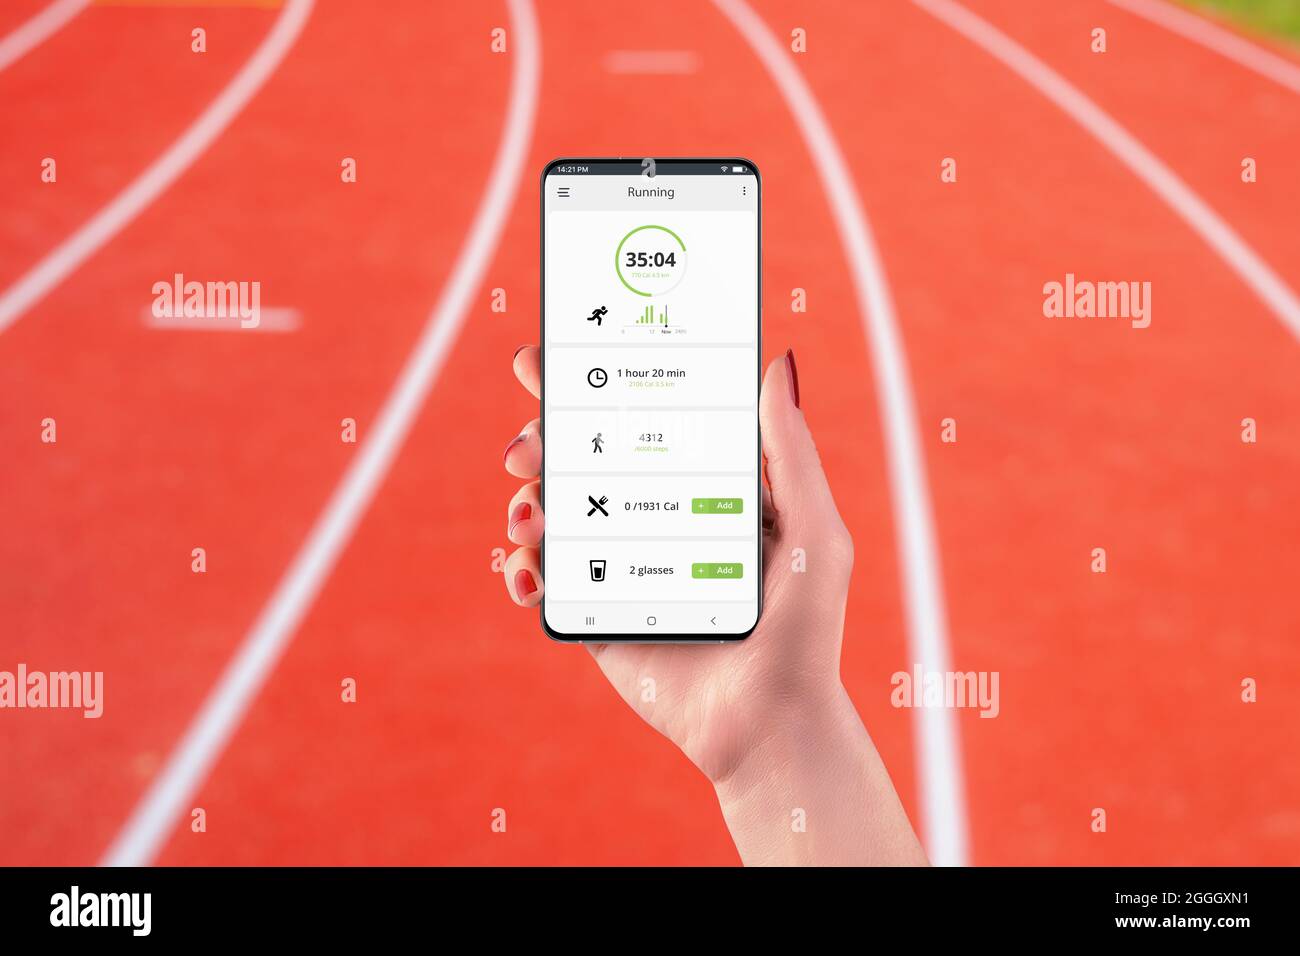 Nếu bạn yêu thích chạy bộ và muốn theo dõi tiến bộ của mình, xem hình ảnh liên quan đến Running App Interface để tìm hiểu về những tính năng và giao diện tuyệt vời của ứng dụng chạy tốt nhất trên thị trường hiện nay.